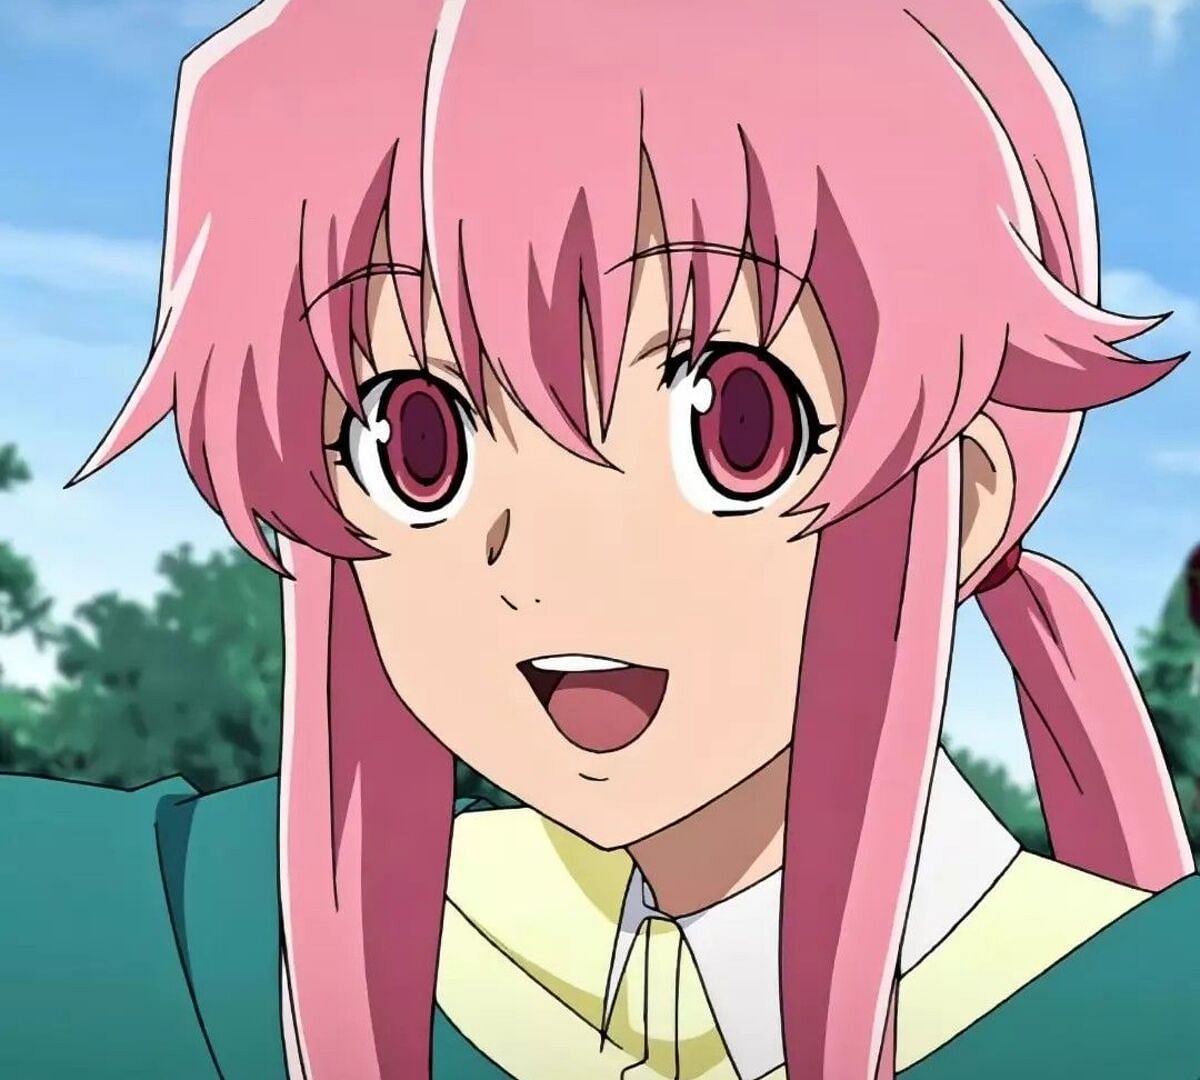 Yuno in the anime (Image via Asread studios)